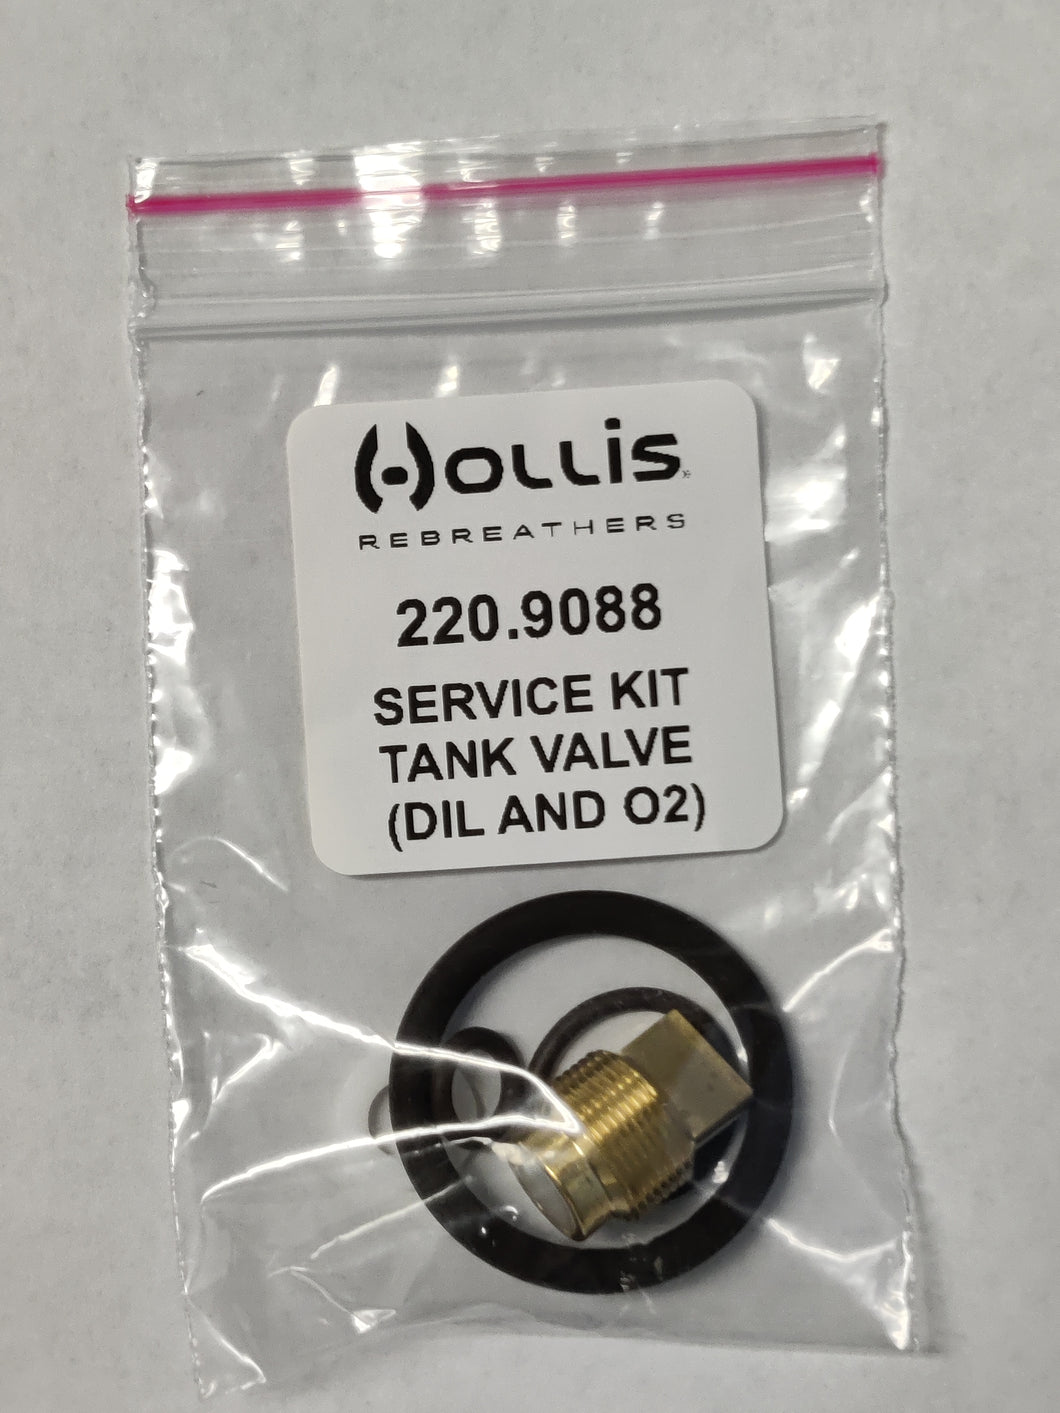 Photo of - Hollis Service Kit Tank Valve (Dil & O2) - Scubadelphia DiveSeekers.com